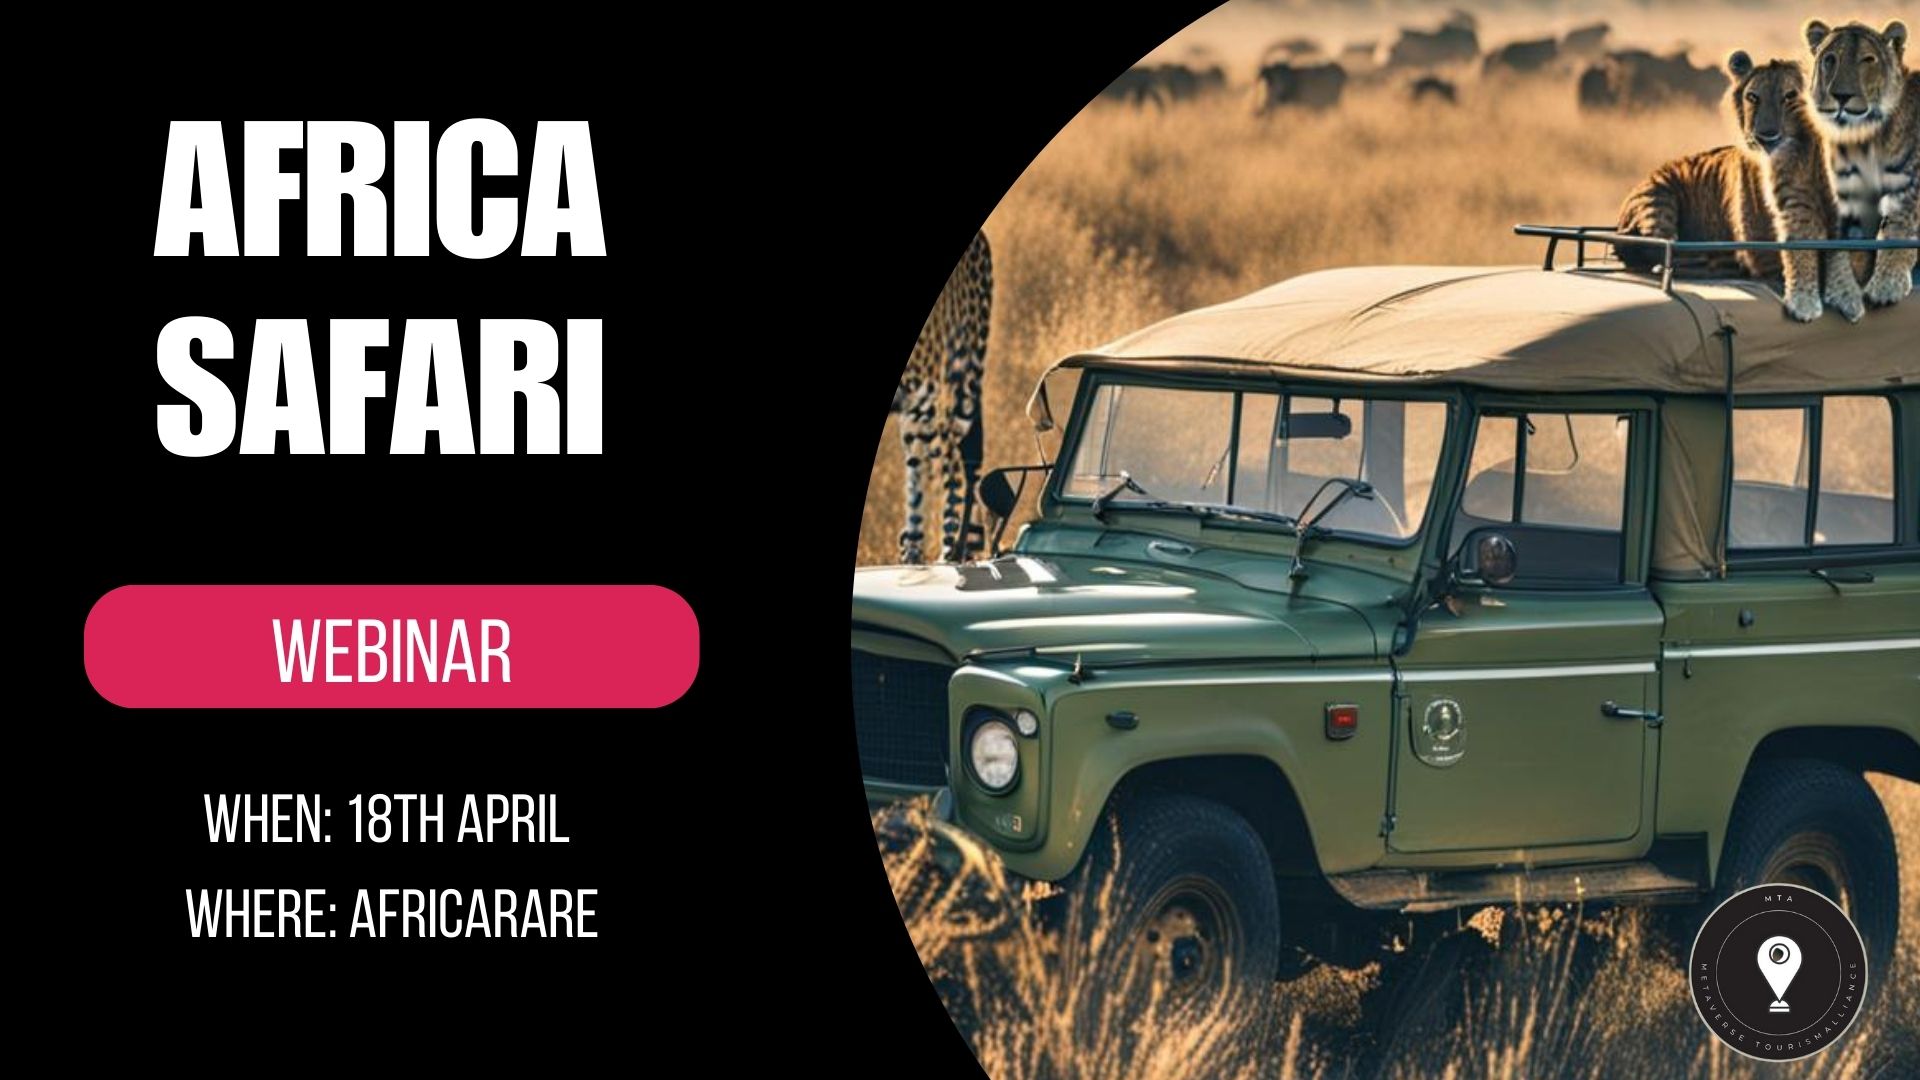 Explore Africa Safari Webinar April 18